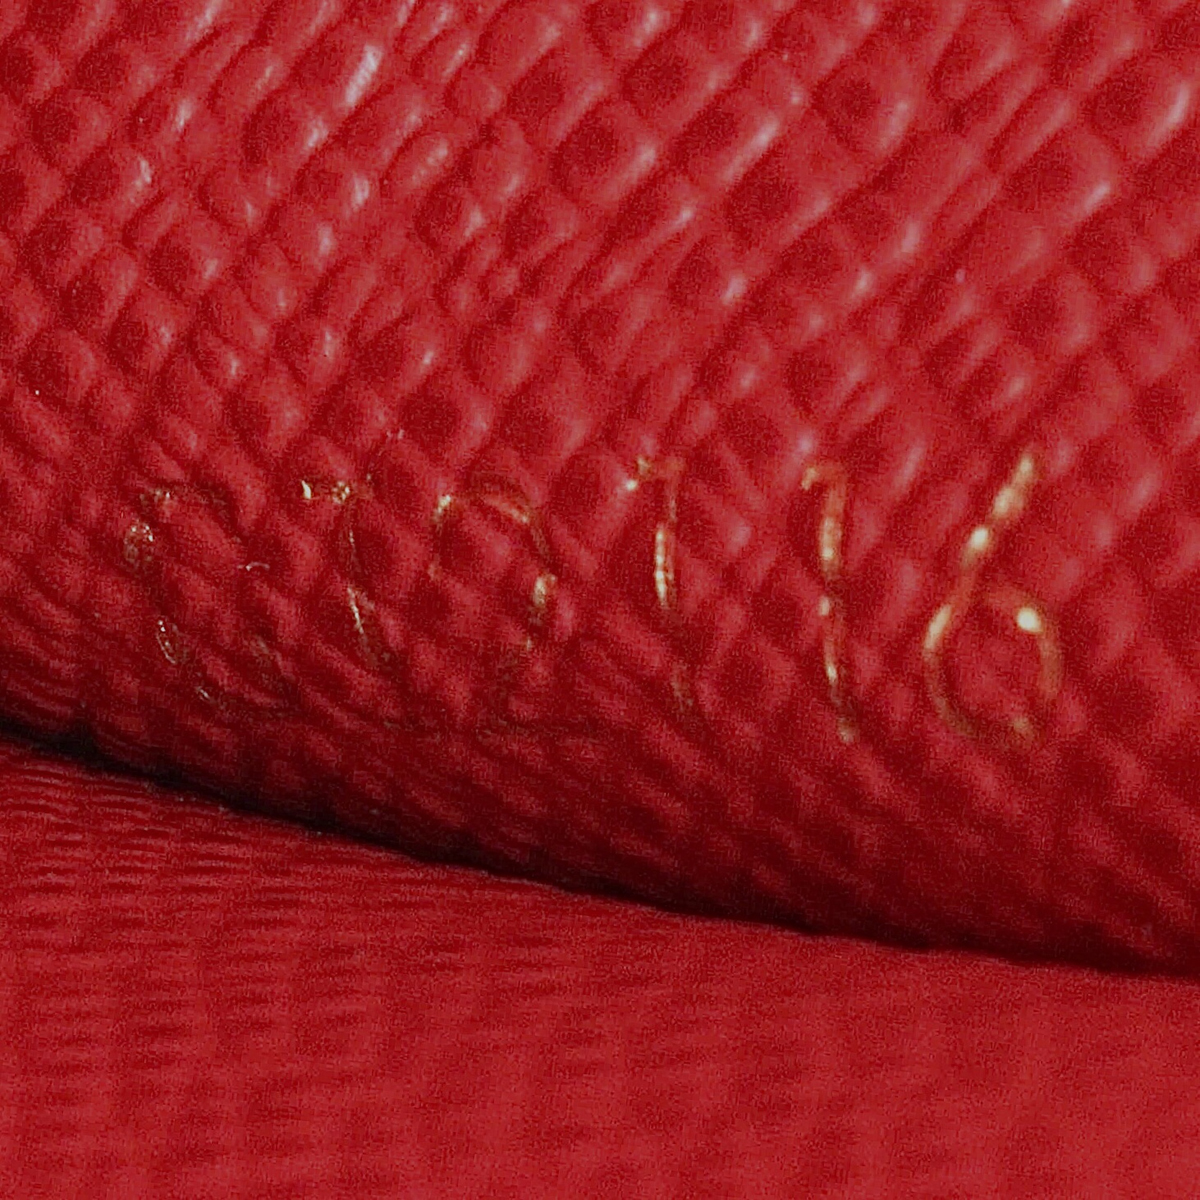 Louis Vuitton Red Monogram Canvas and Leather Kimono Bag Louis